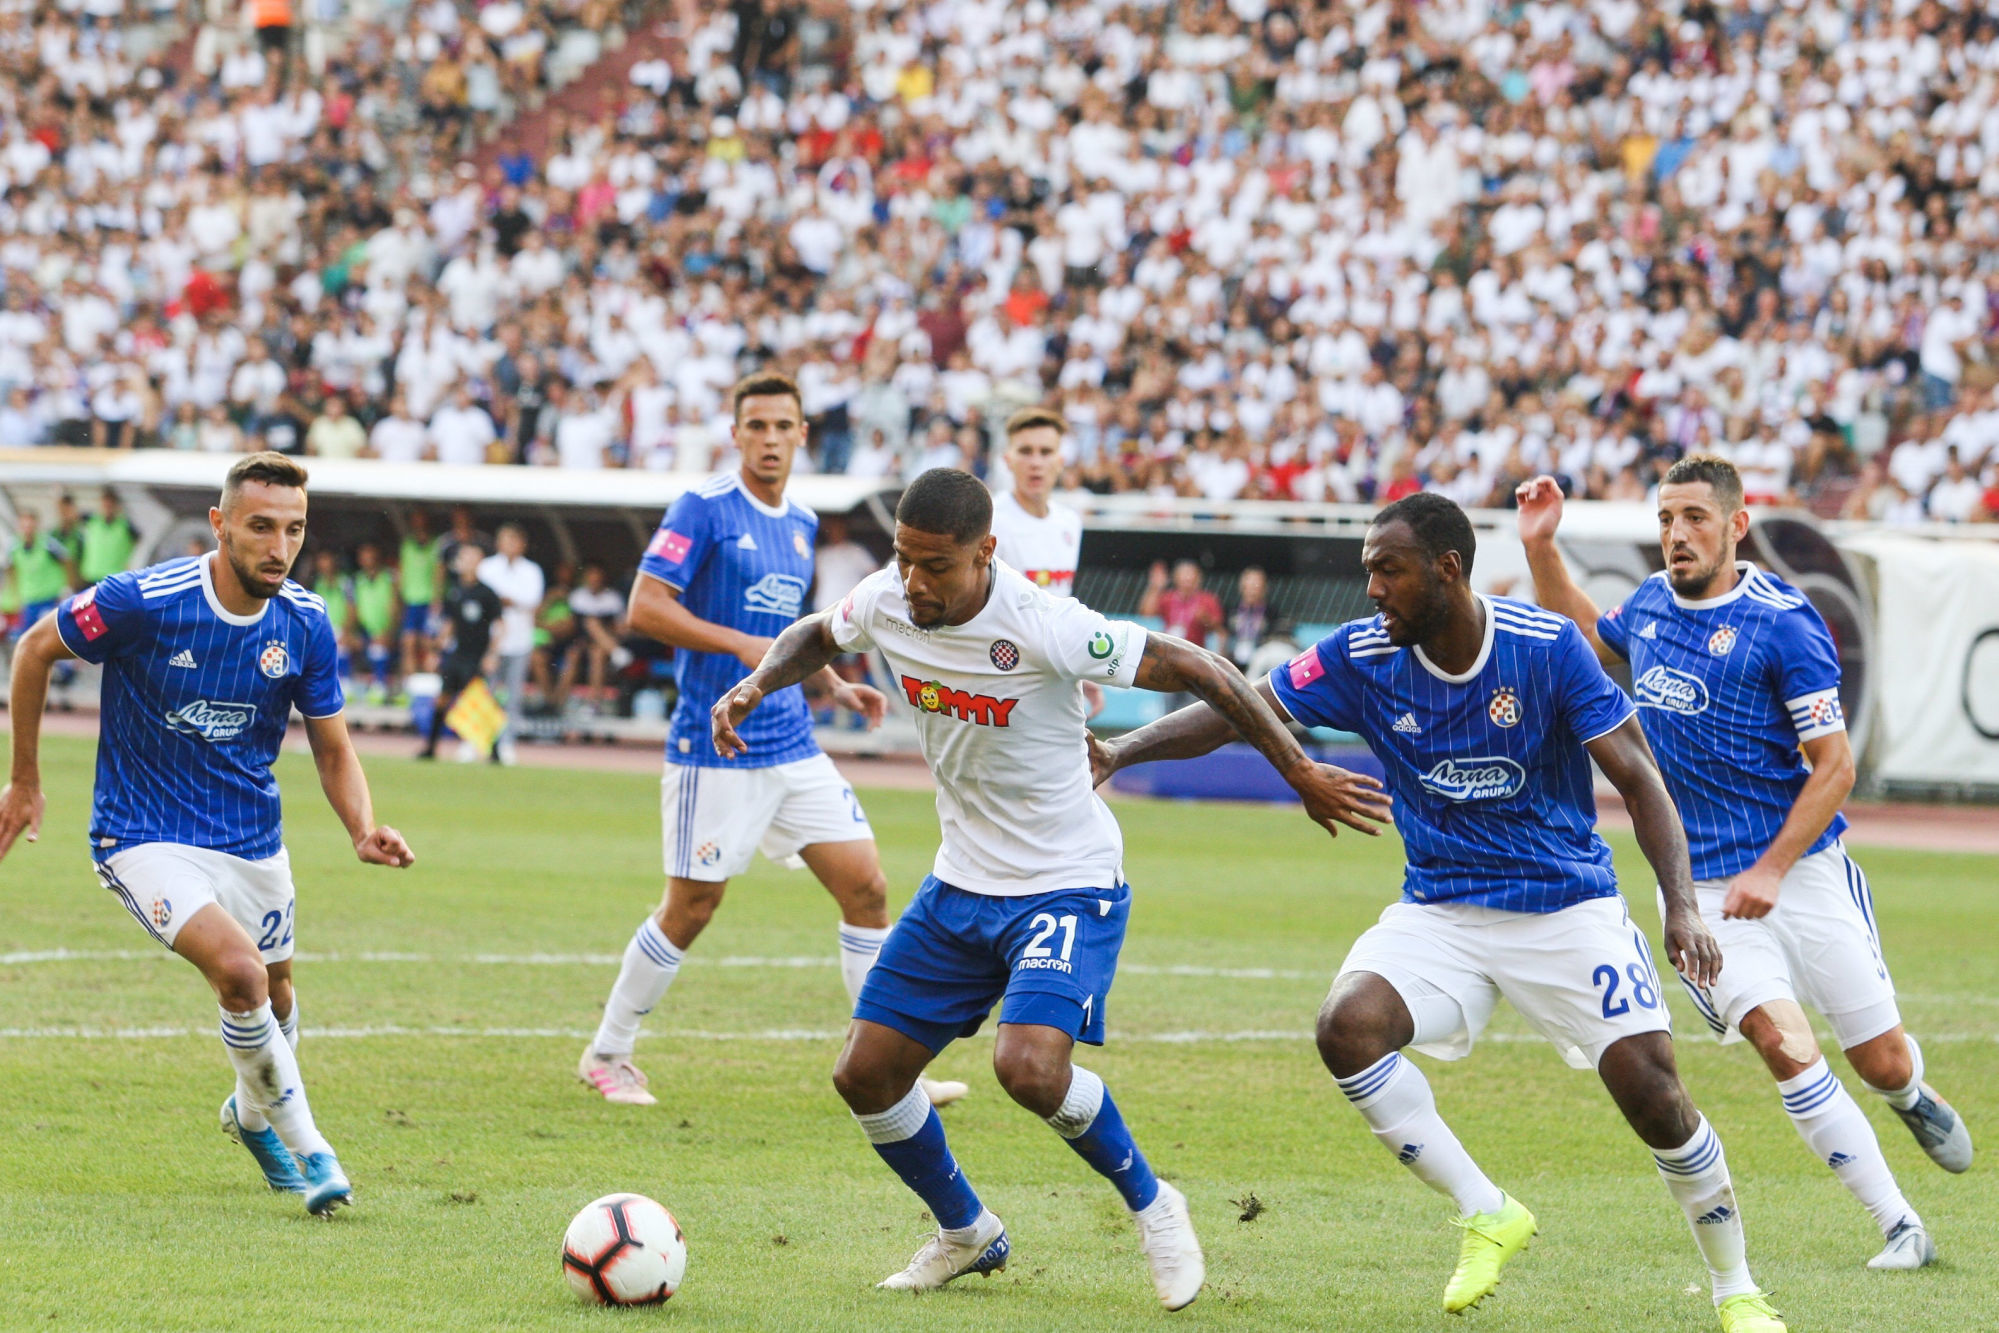 Croatie - HNK Hajduk Split - Résultats, calendriers, effectif,  statistiques, photos, vidéos et news. - Soccerway